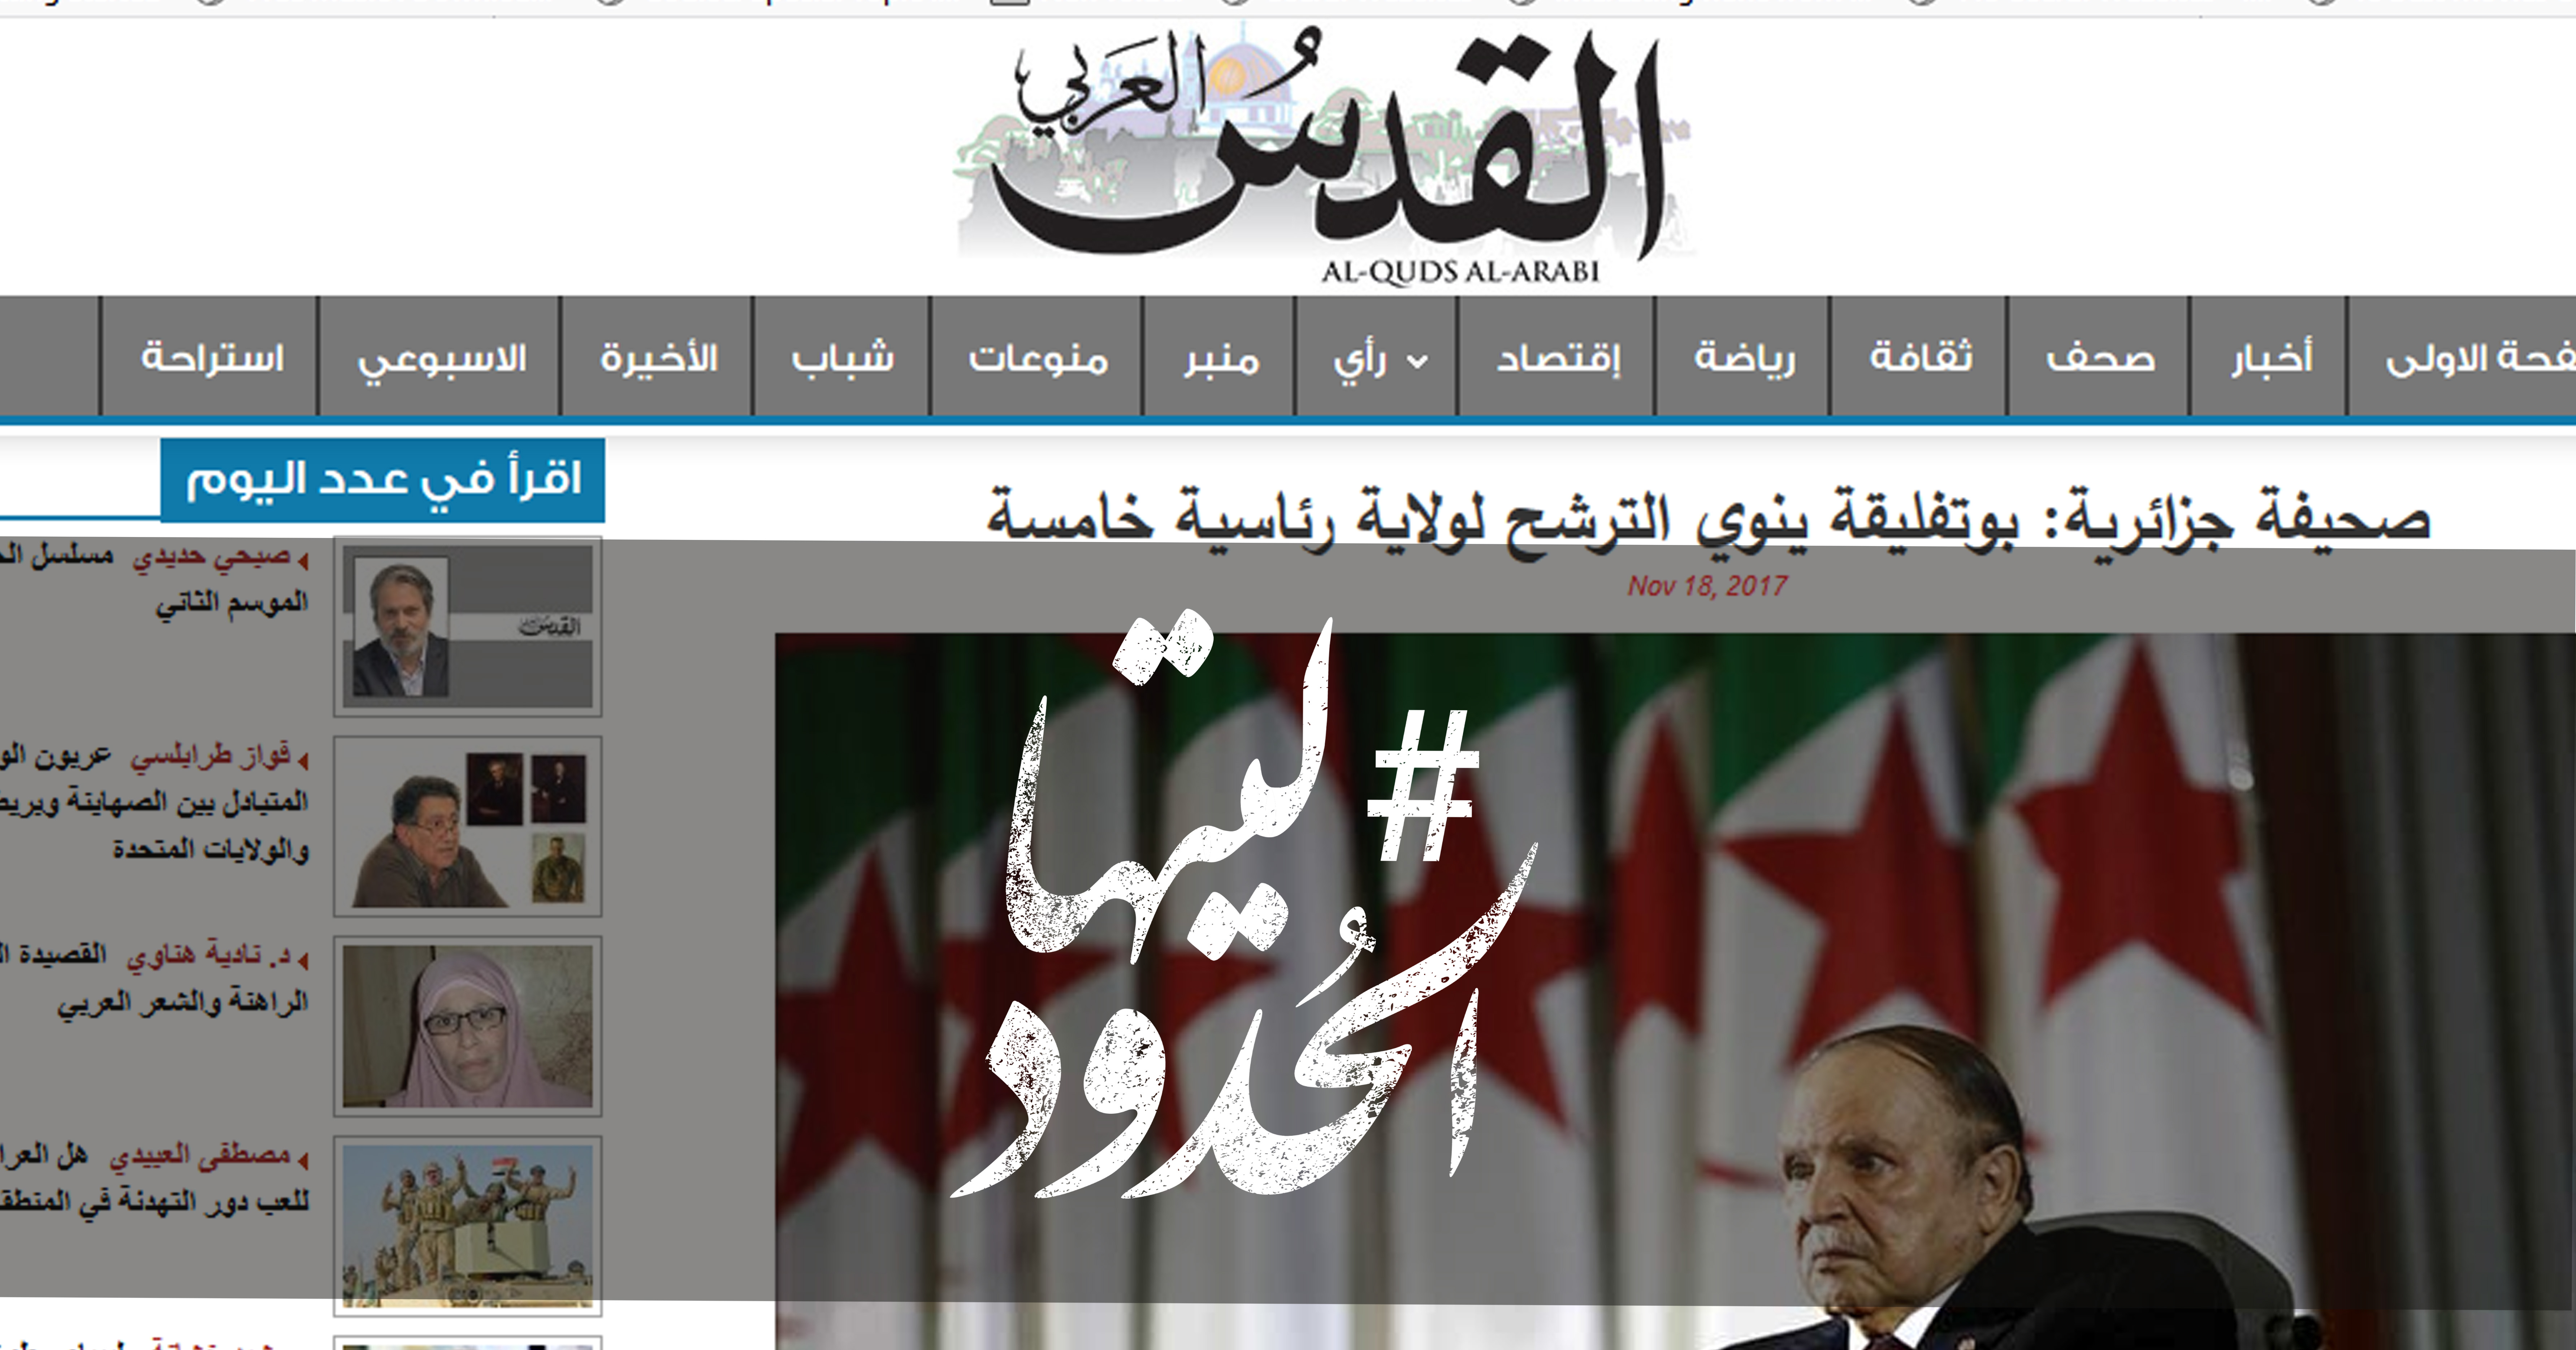 صورة صحيفة جزائرية: بوتفليقة ينوي الترشح لولاية رئاسية خامسة